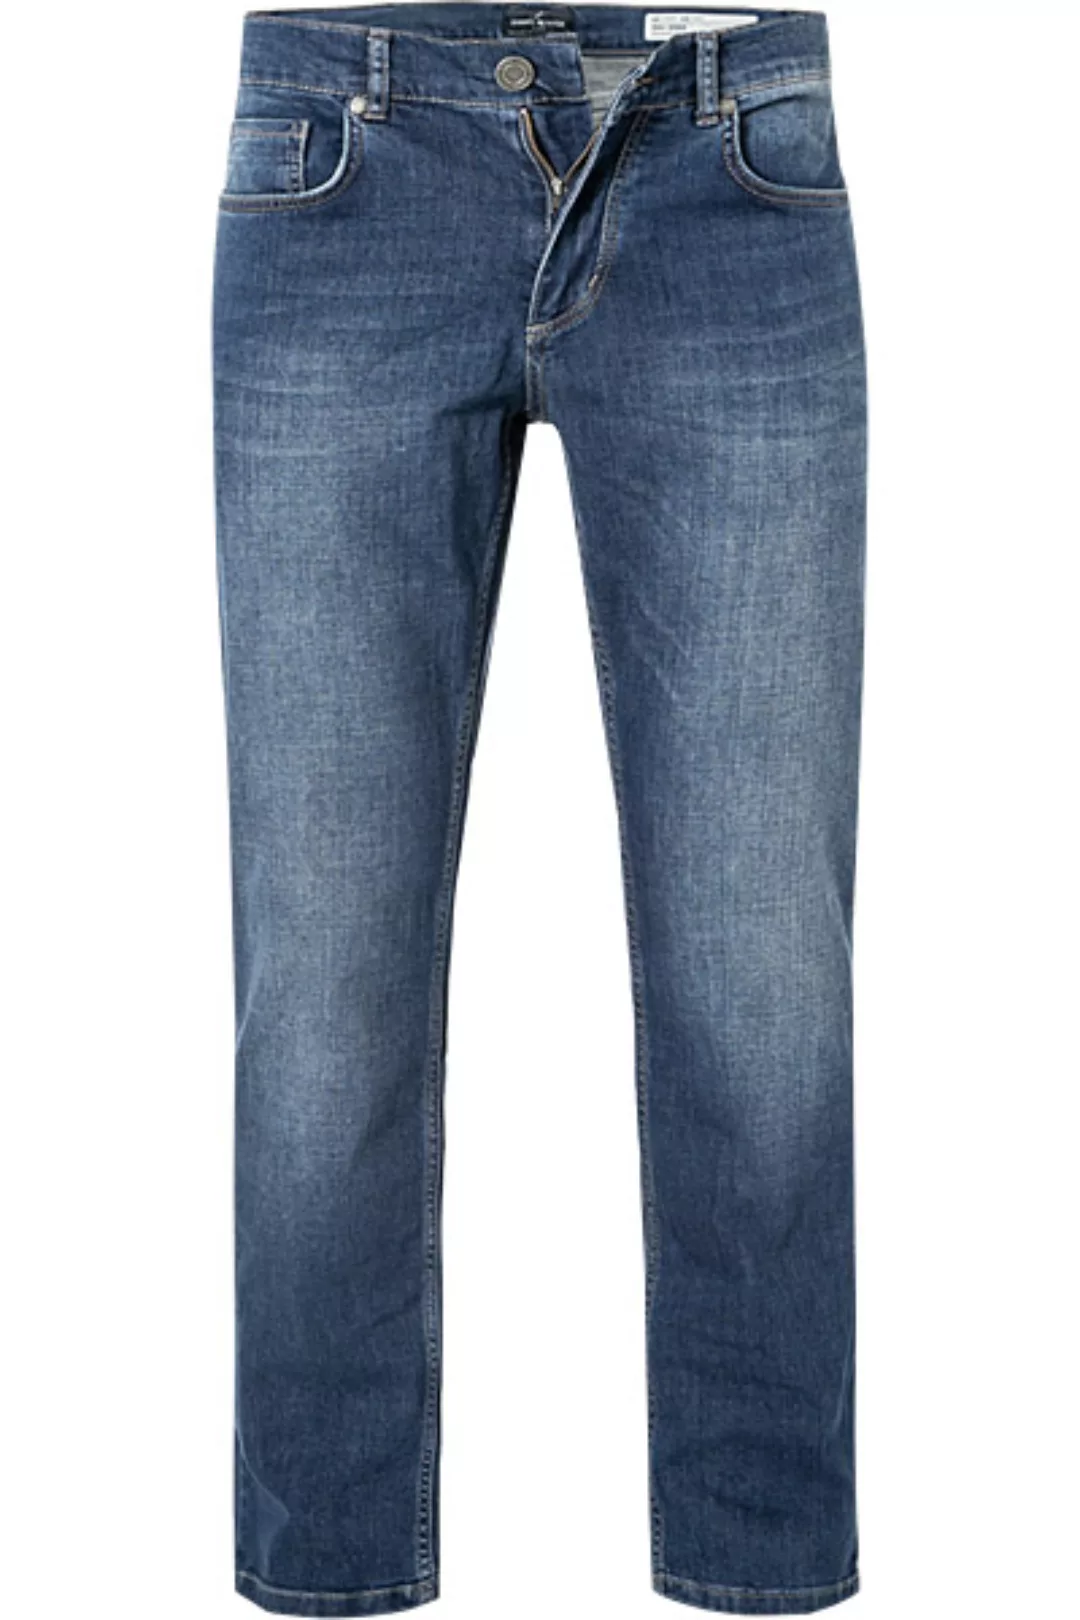 Daniel Hechter Jeans 40090/100355/680 günstig online kaufen